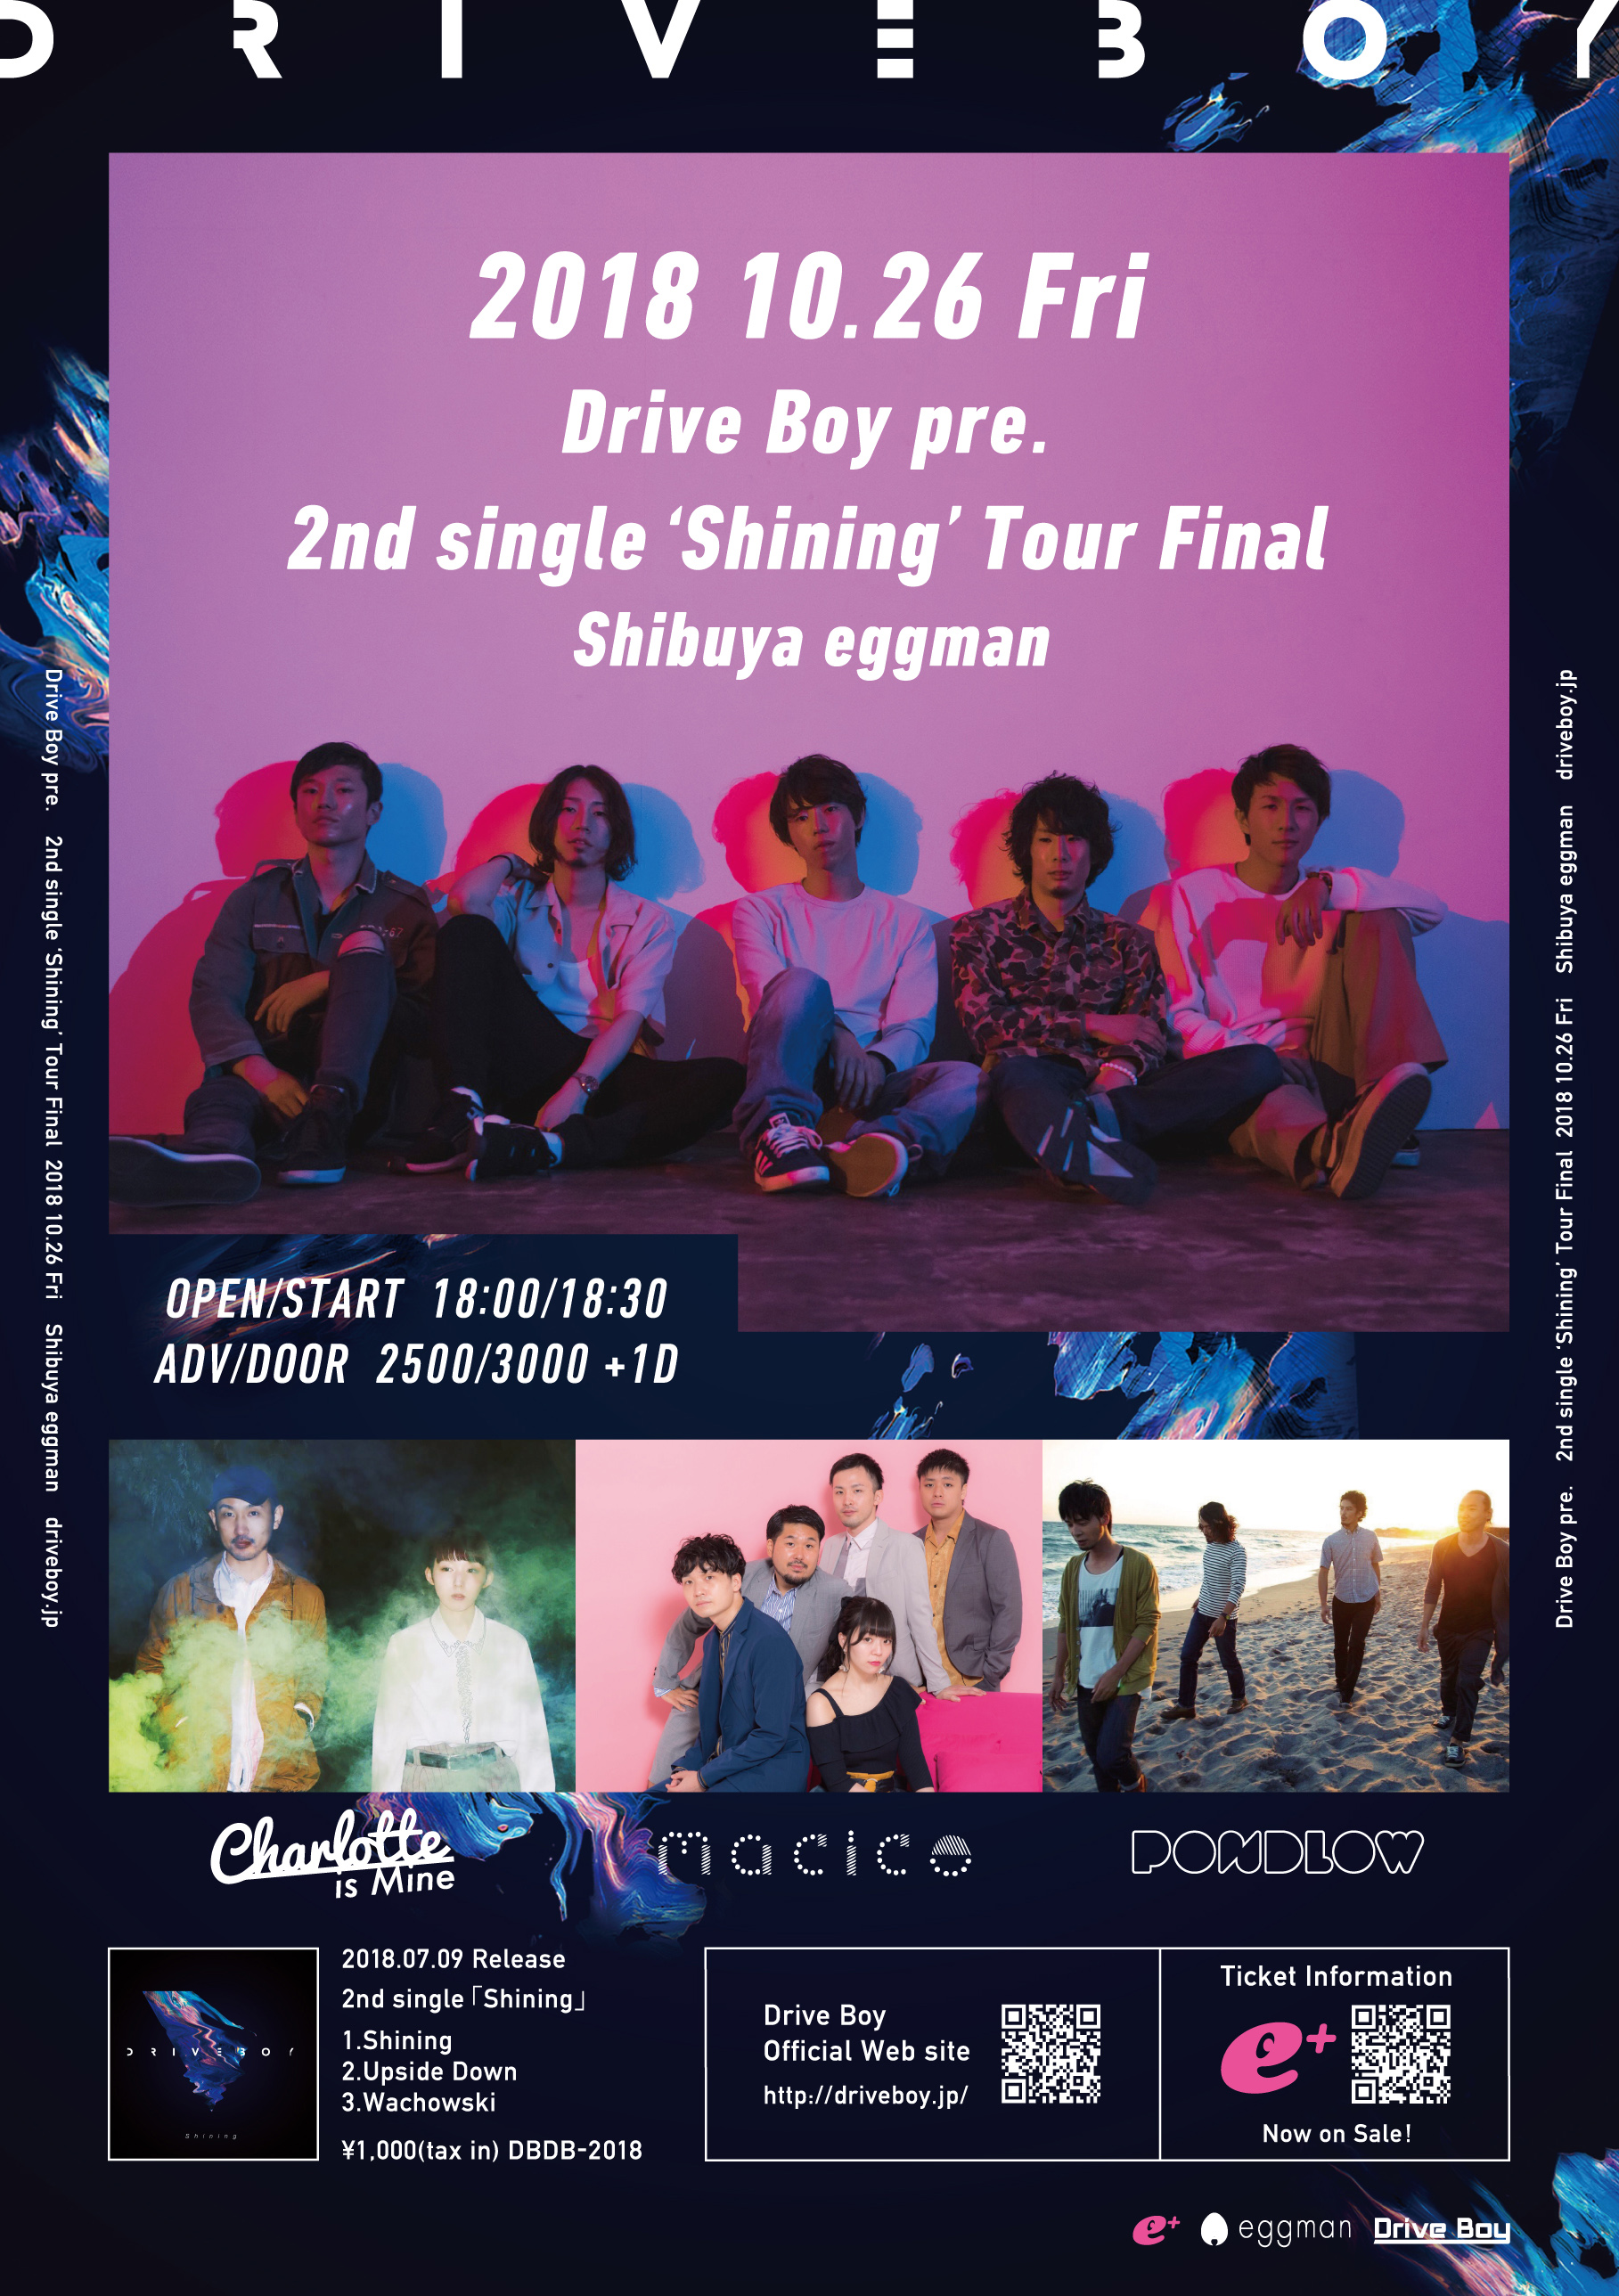 Drive Boy pre. 2nd single ‘Shining’ Tour Final